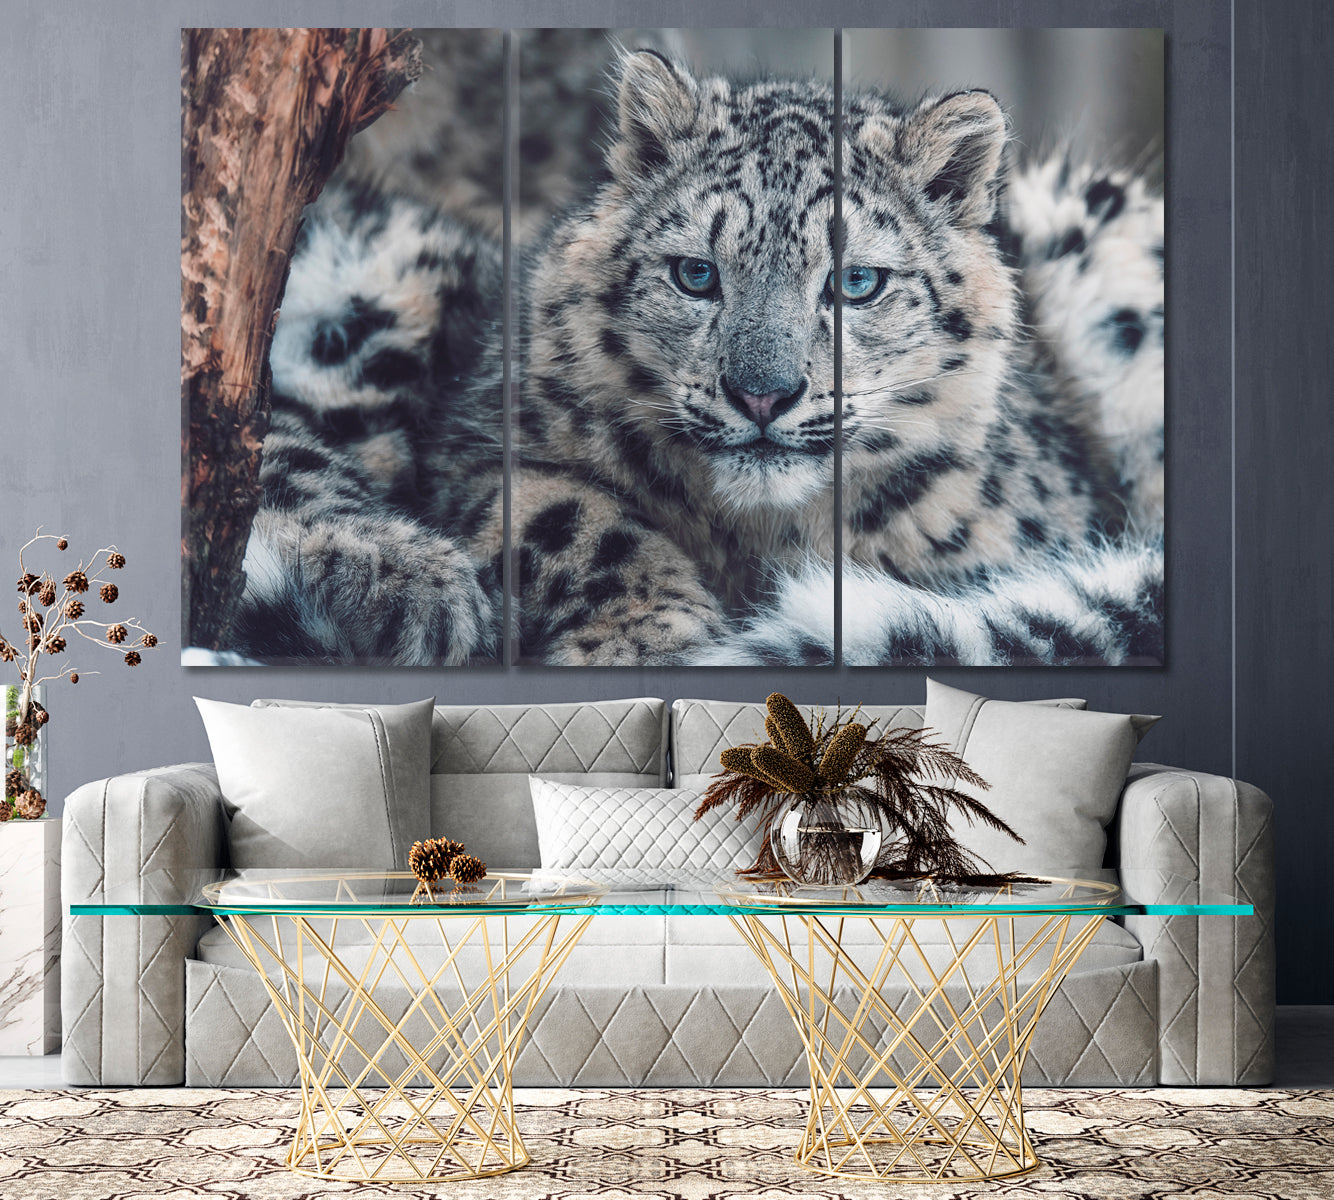 Snow Leopard Portrait Canvas Print ArtLexy 3 Panels 36"x24" inches 